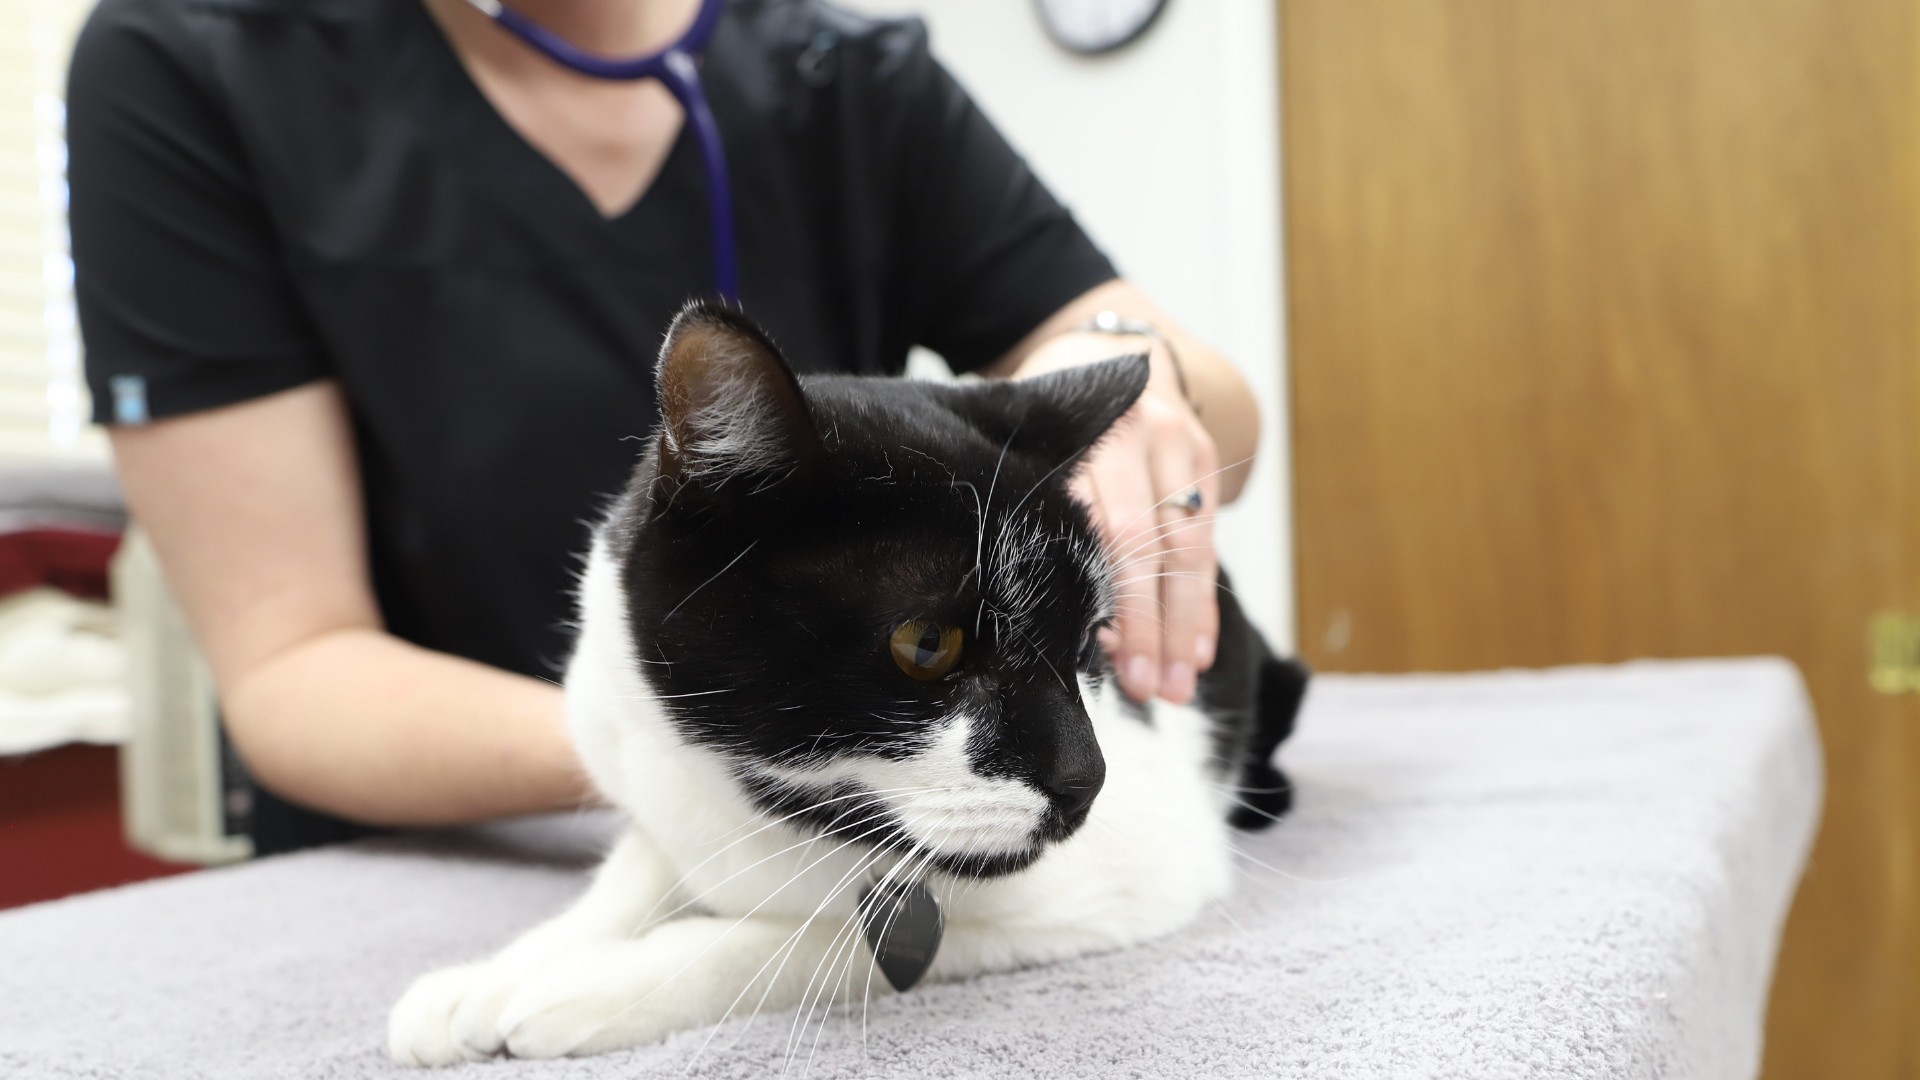 a vet staff examine a cat